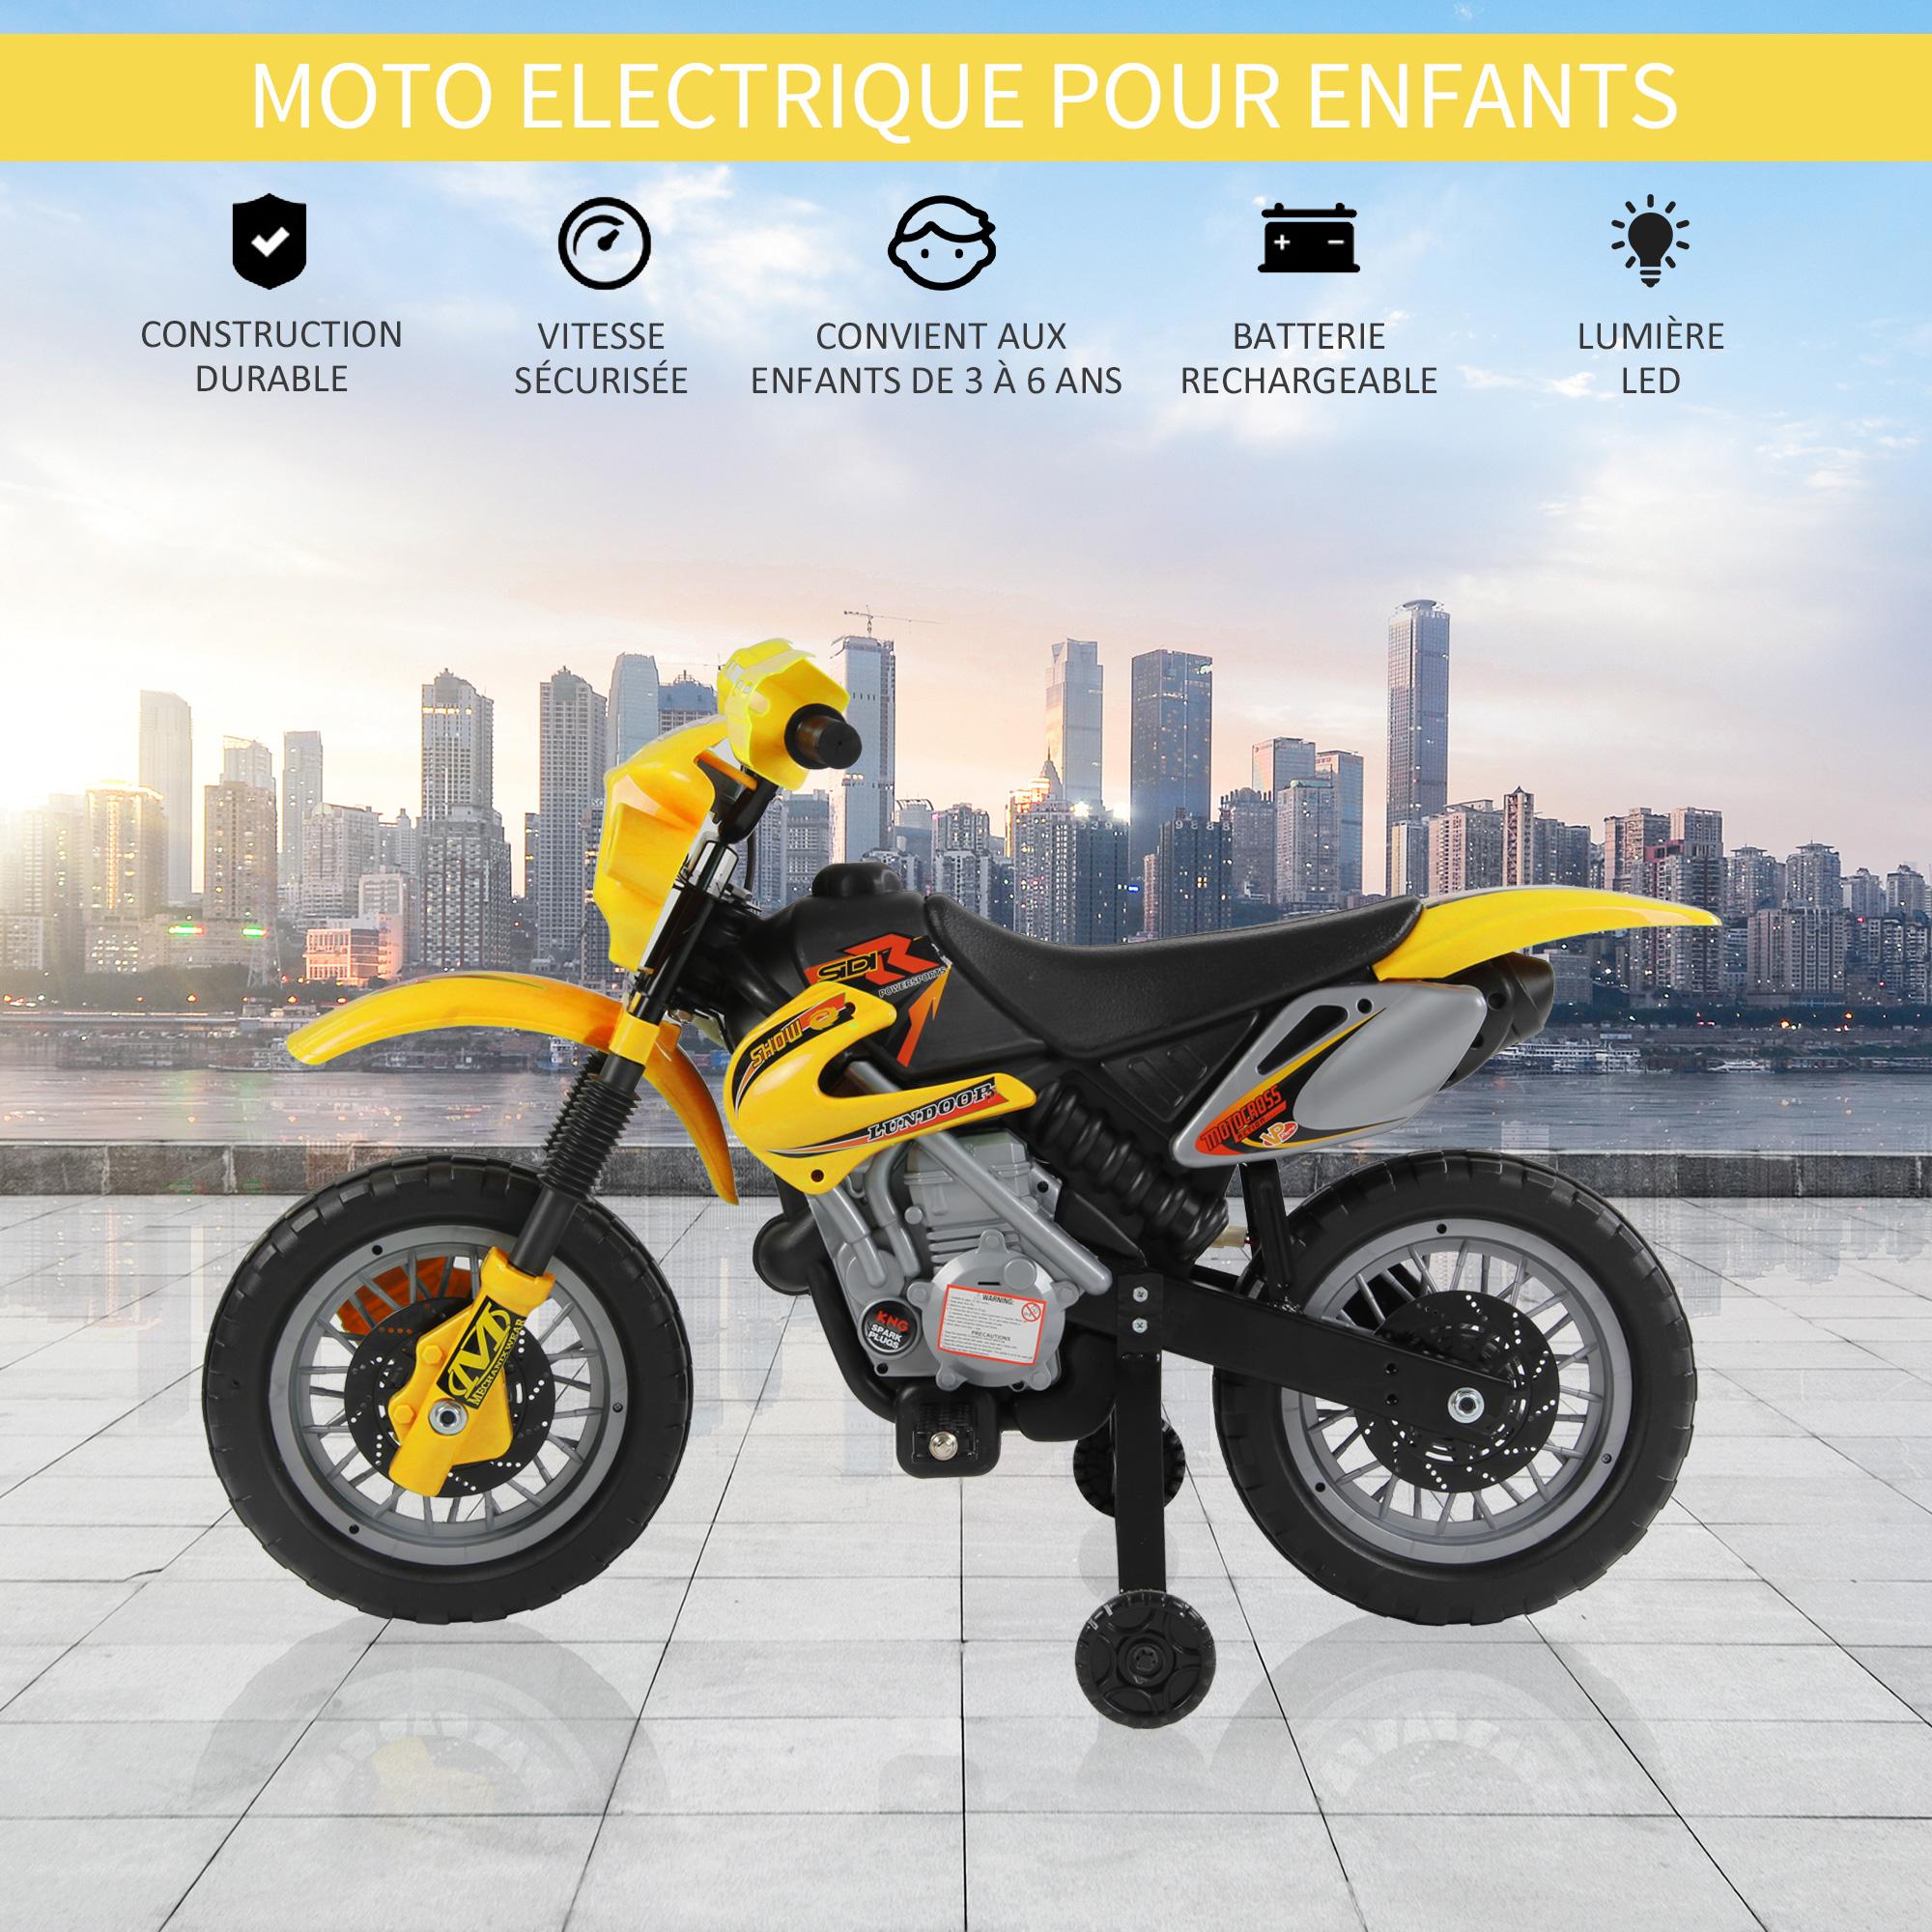 Moto Cross électrique enfant 3 à 6 ans 6 V phares klaxon musiques 102 x 53 x 66 cm jaune et noir